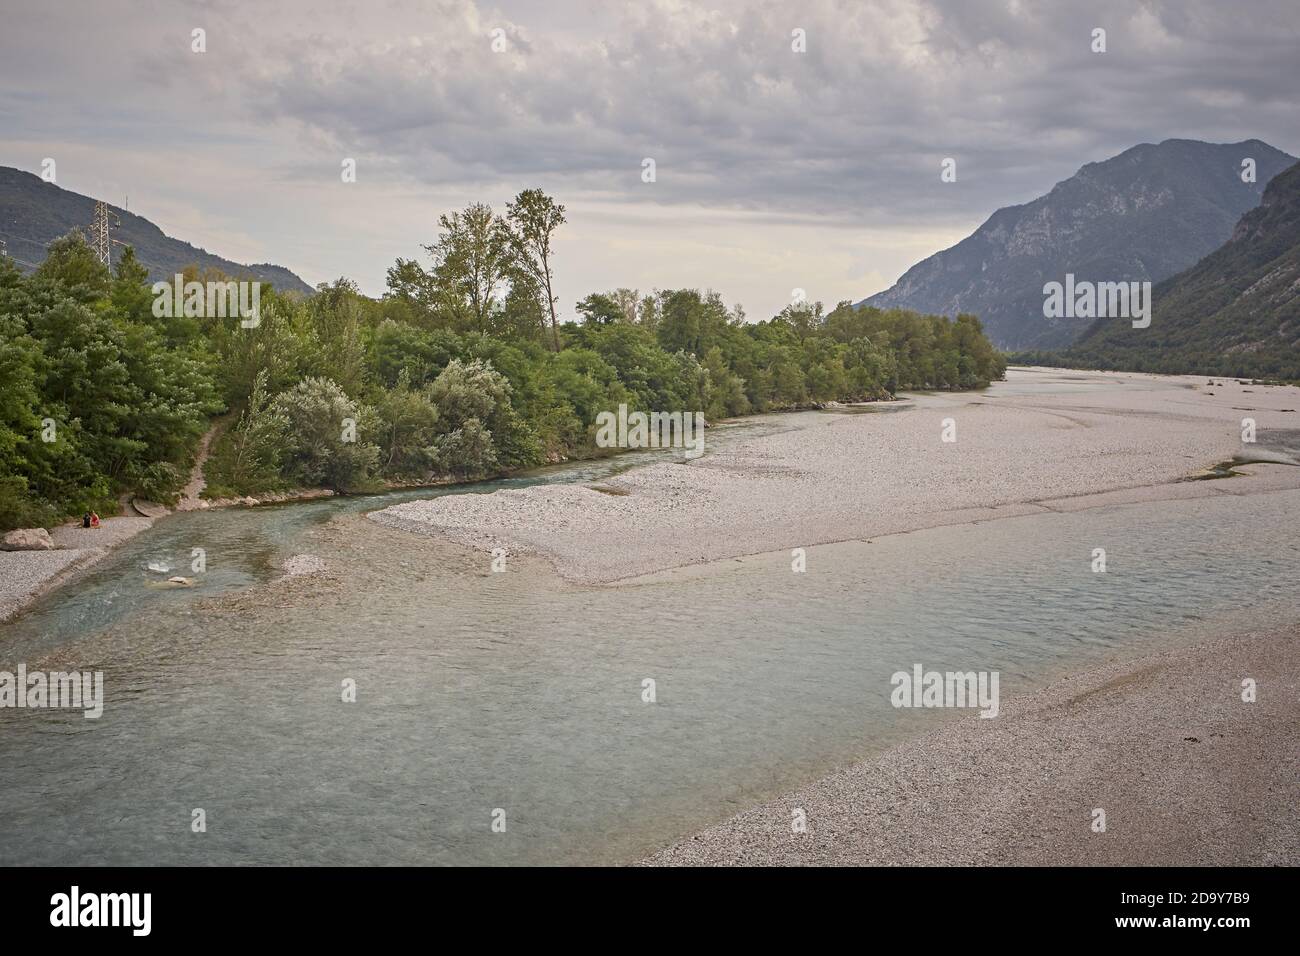 Friuli Venezia Giulia, Italy. The Tagliamento river near the